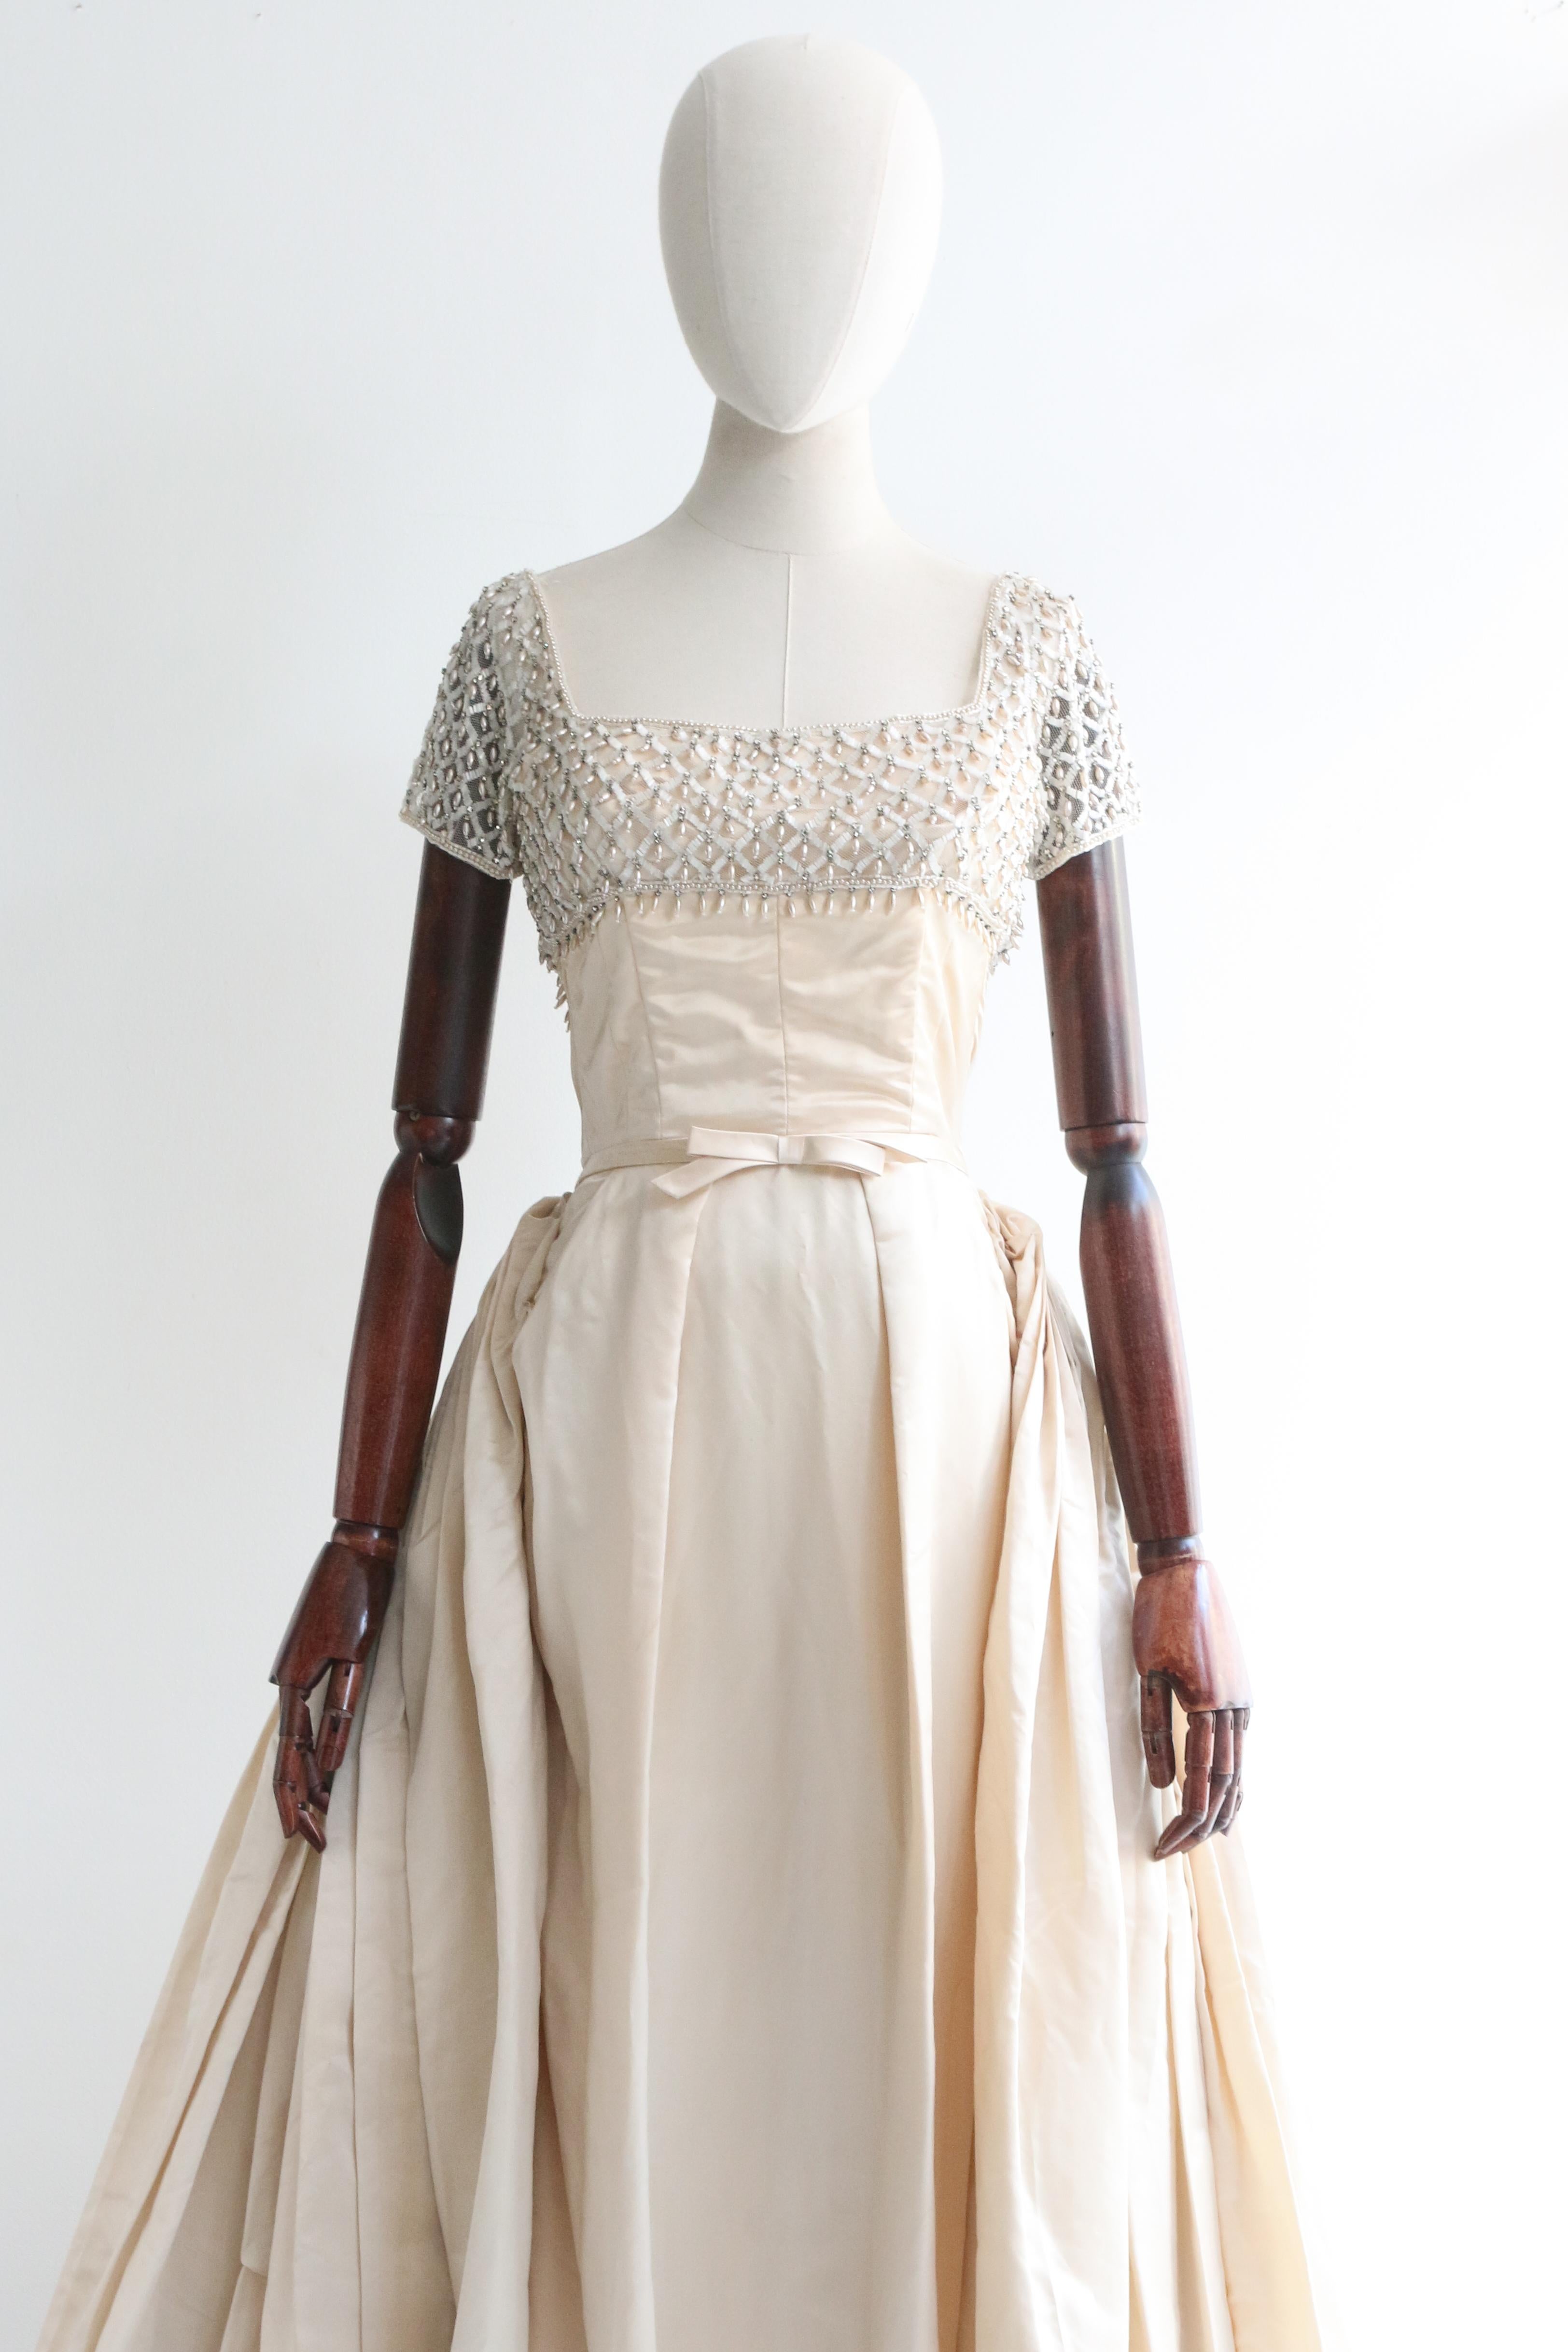 Dieses originale Neymar Couture-Duchess-Satin-Kleid aus den 1950er Jahren in einem prächtigen Cremeton ist ein einmaliges Stück und zeigt wahre Handwerkskunst in seinem Design und seiner Konstruktion. 

Der gerade Ausschnitt ist auf einer Tüllbasis